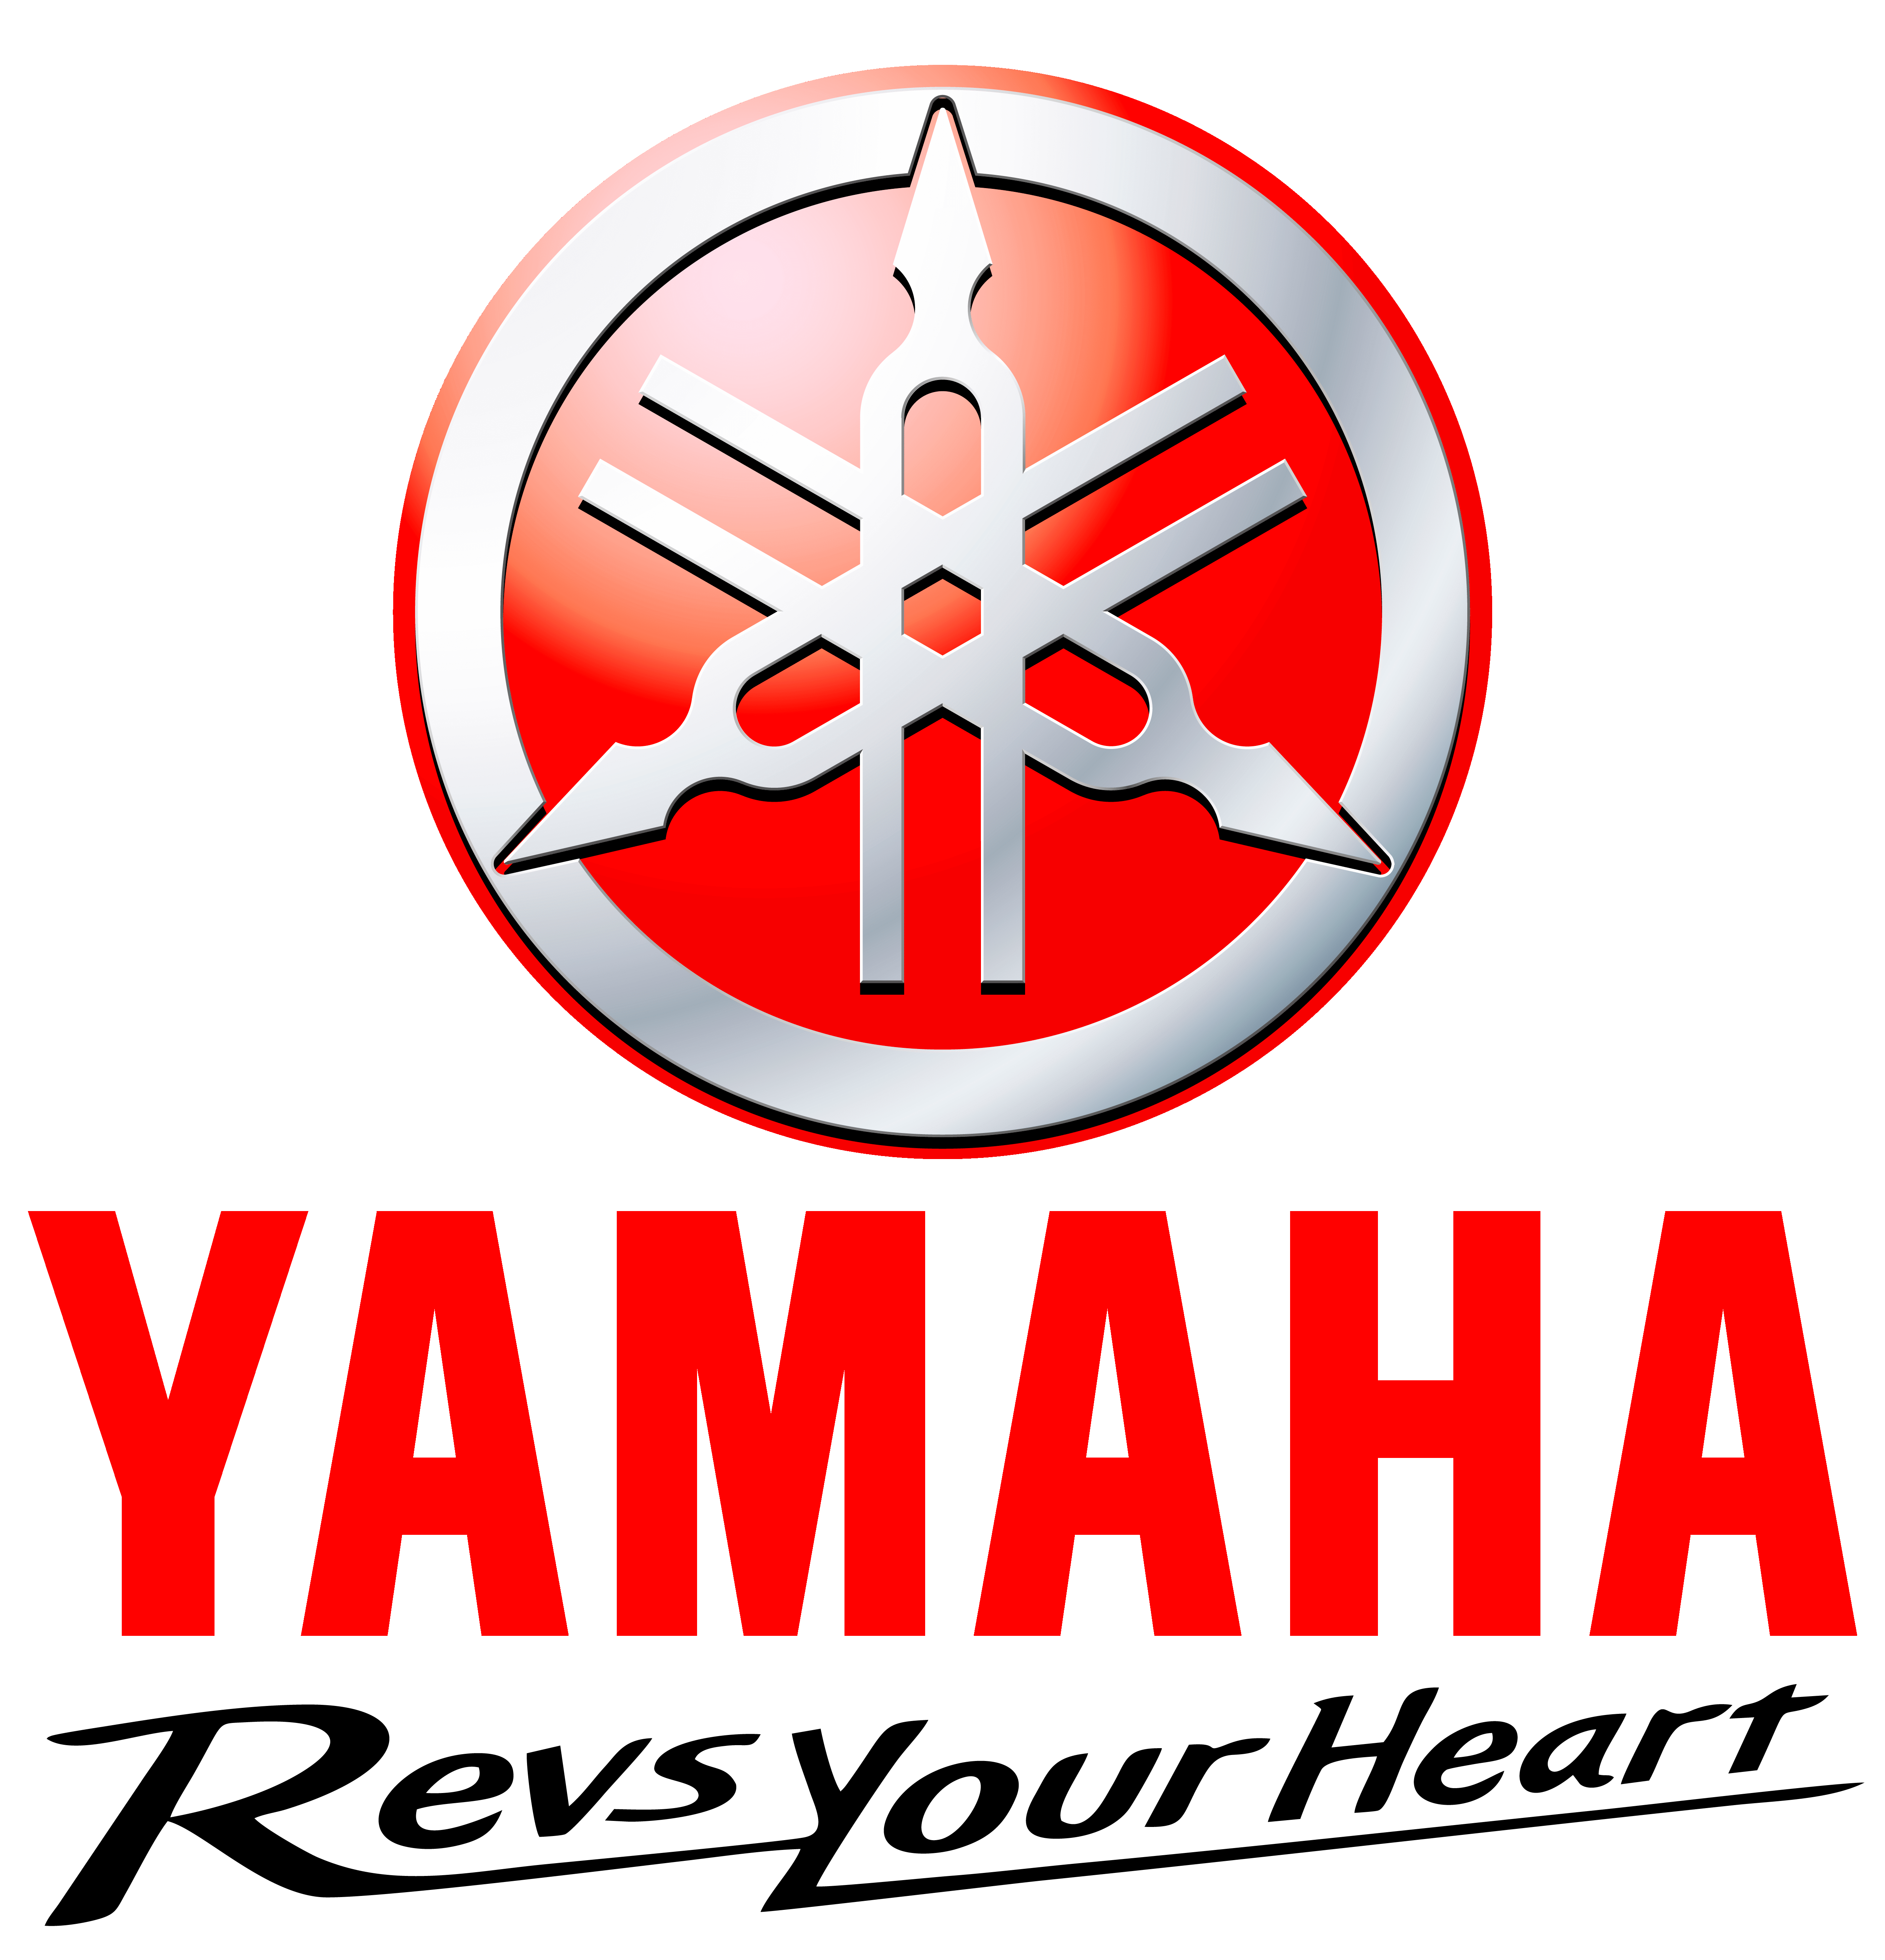 Yamalube Logo - Yamaha motorcycle logo history and Meaning, bike emblem